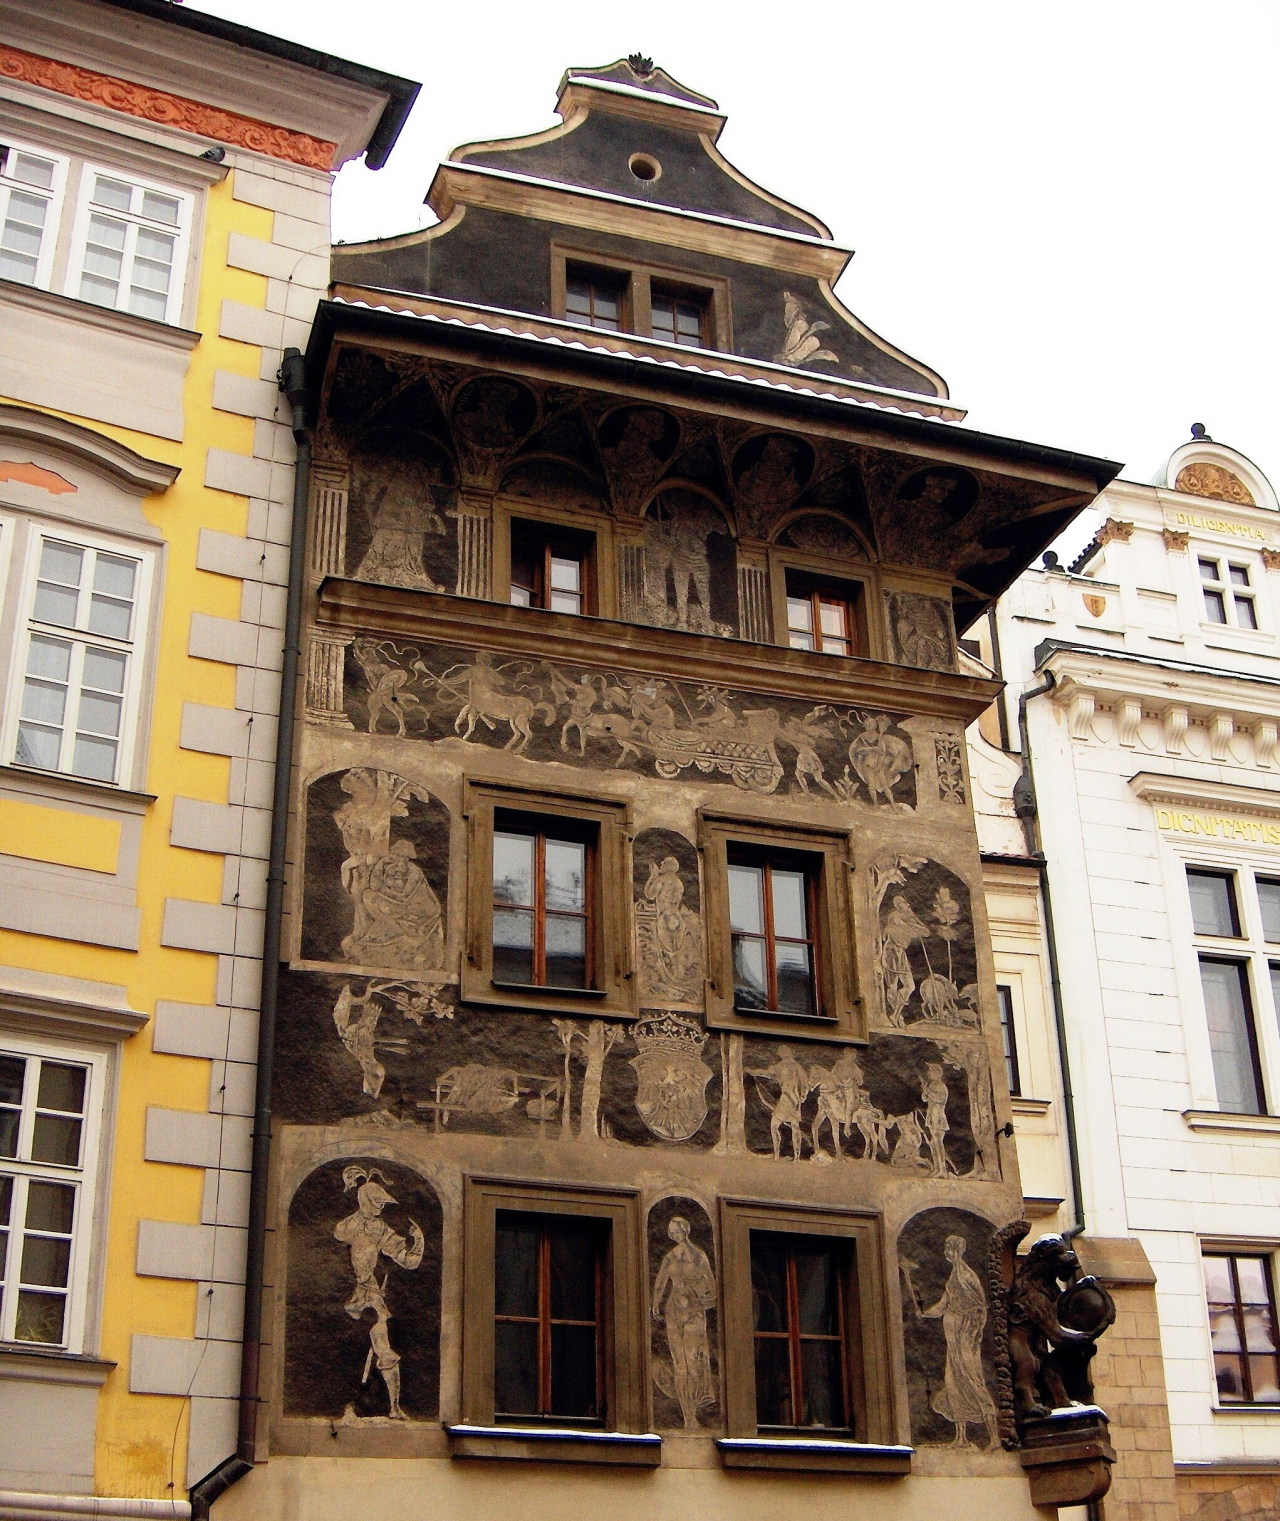 kafkaesque-world:Franz Kafka’s Residence (1889-1896), Prague. During Kafka’s